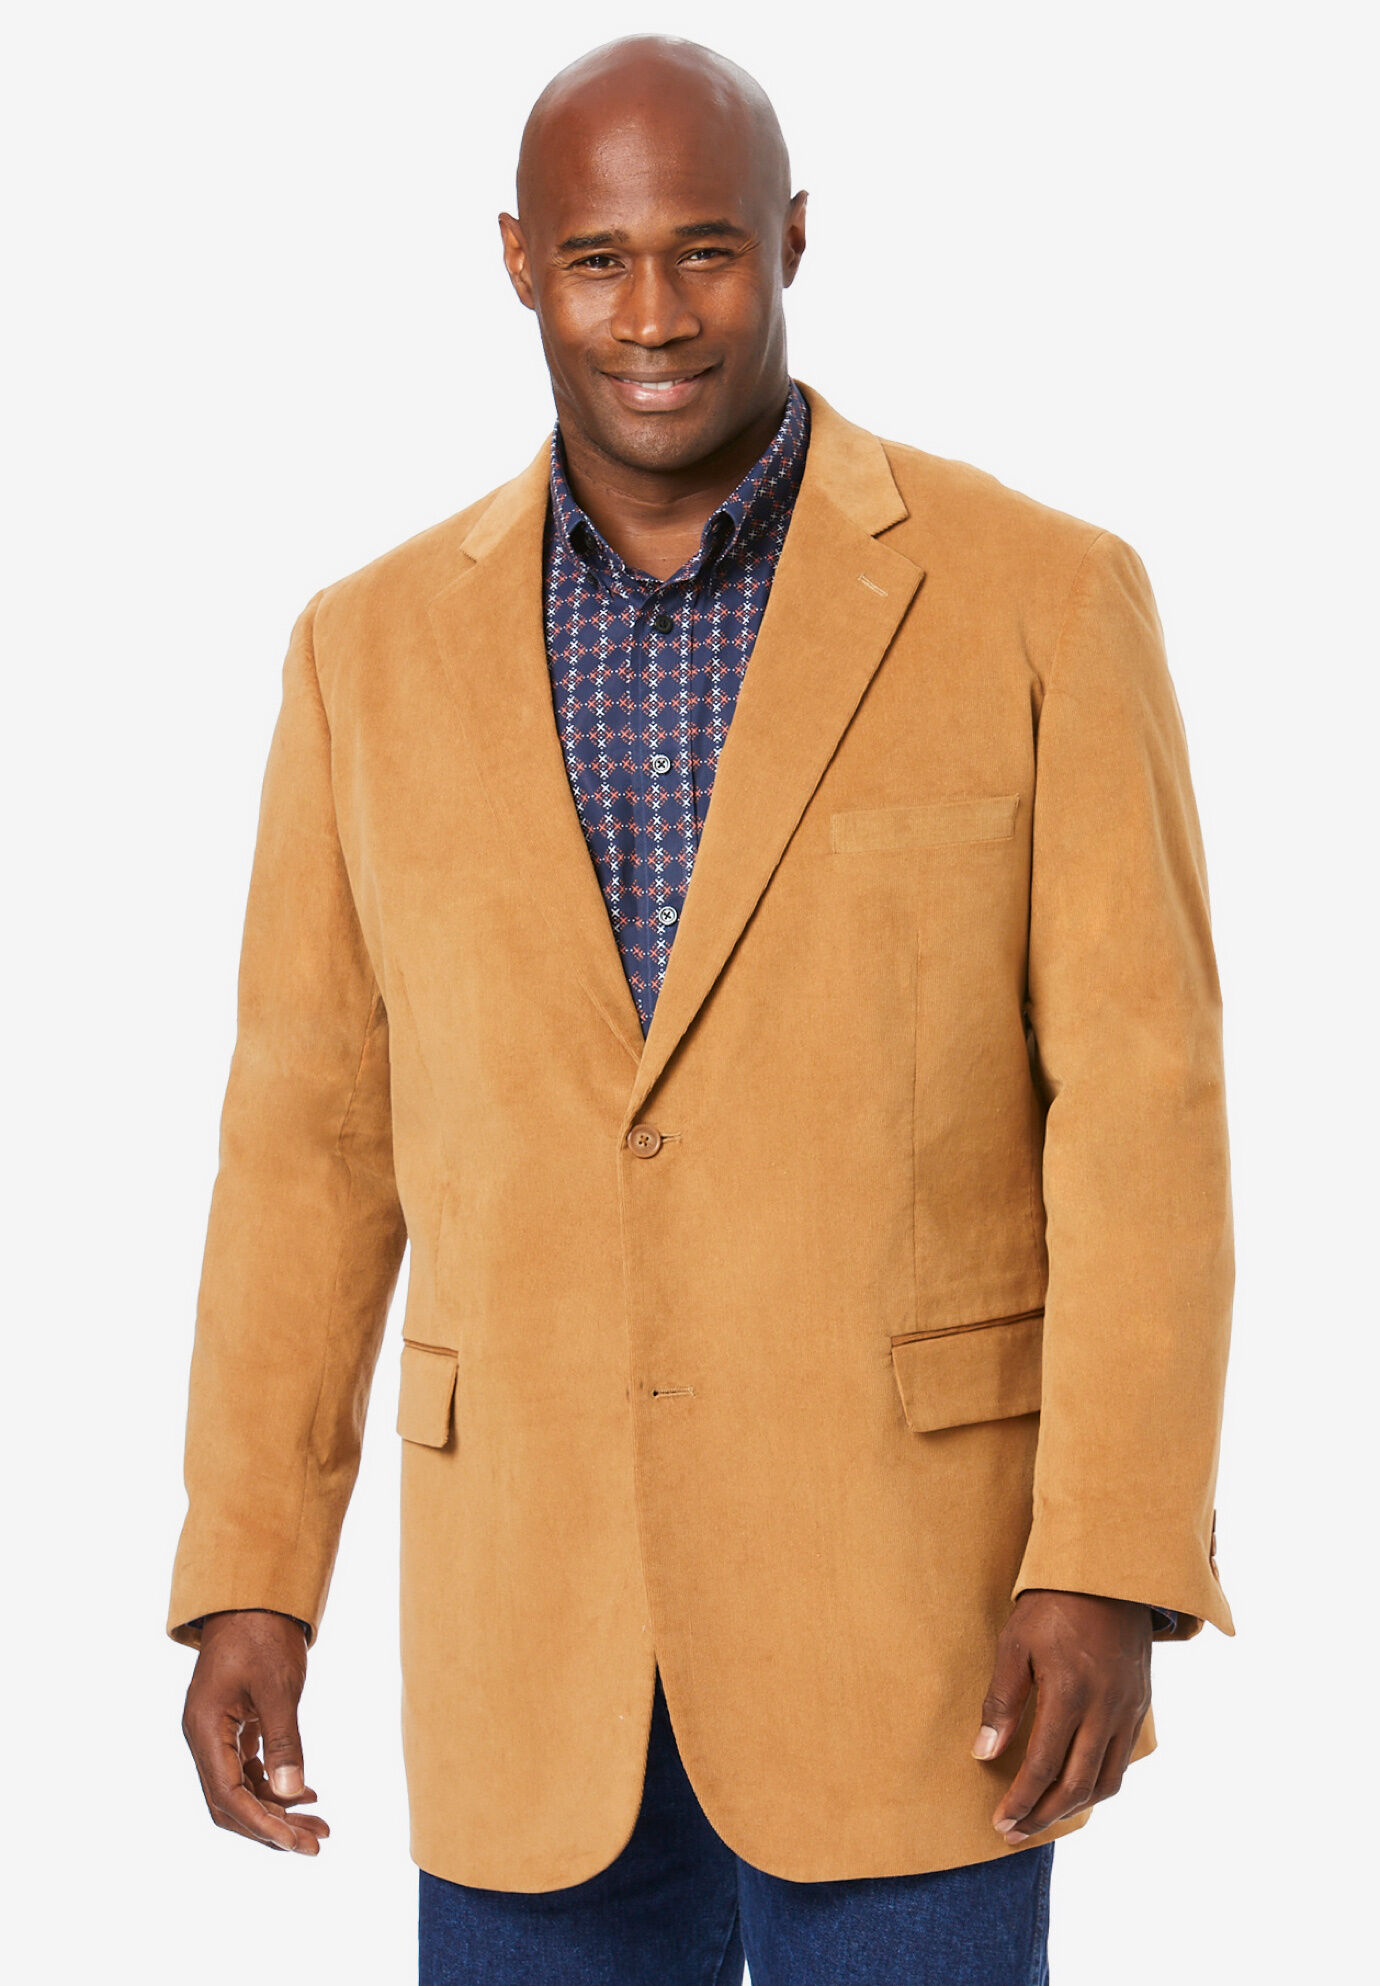 Big & Tall Men's Sports Coats & Blazers | King Size